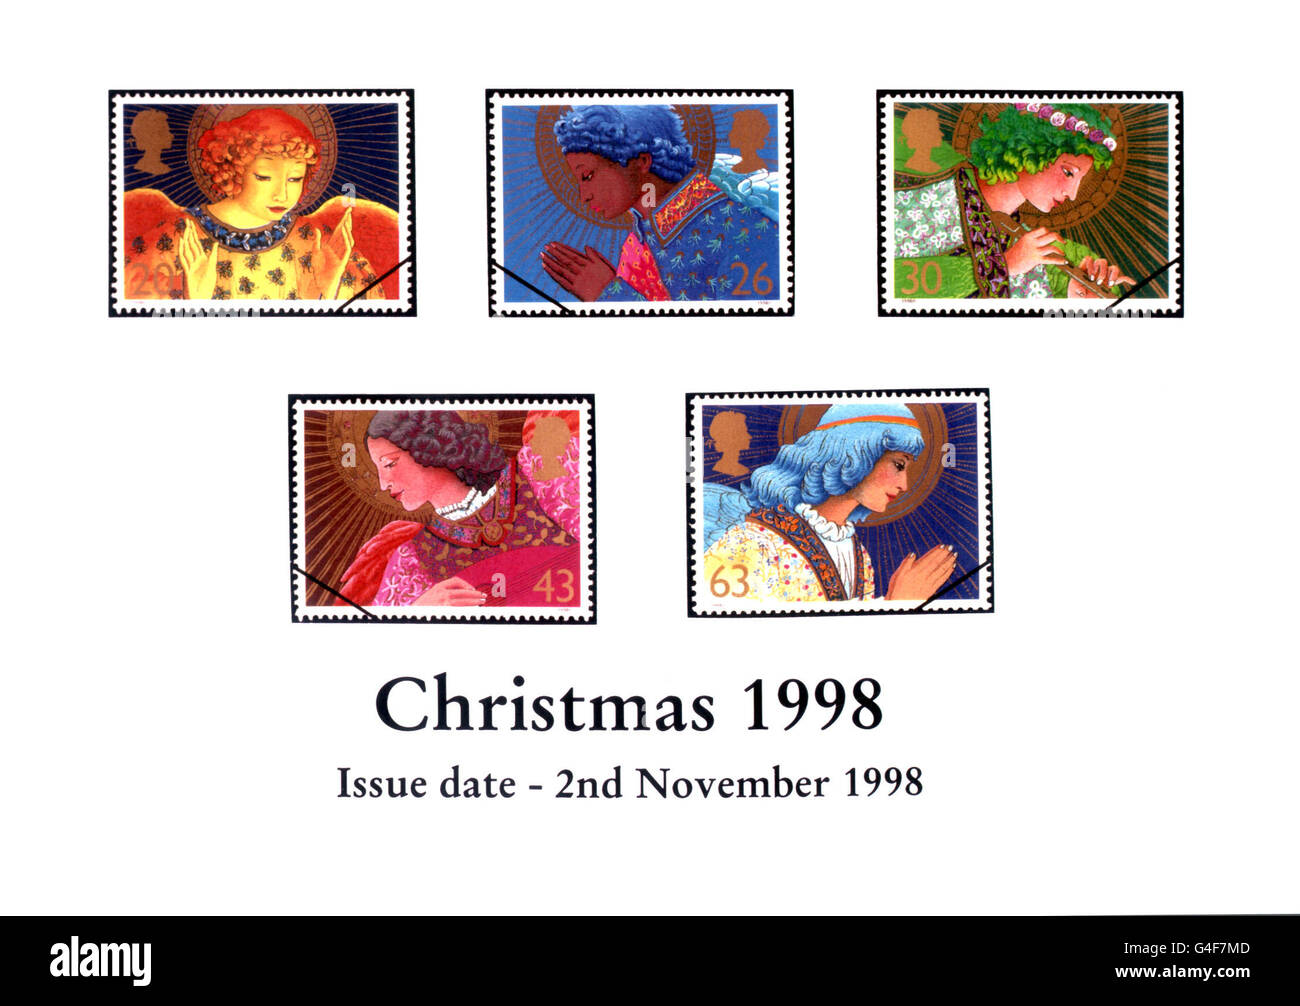 Le Royal Mail donne un aperçu de leurs timbres de Noël 1998 qui sont émis le 2 novembre 1998. Photos PA. Banque D'Images